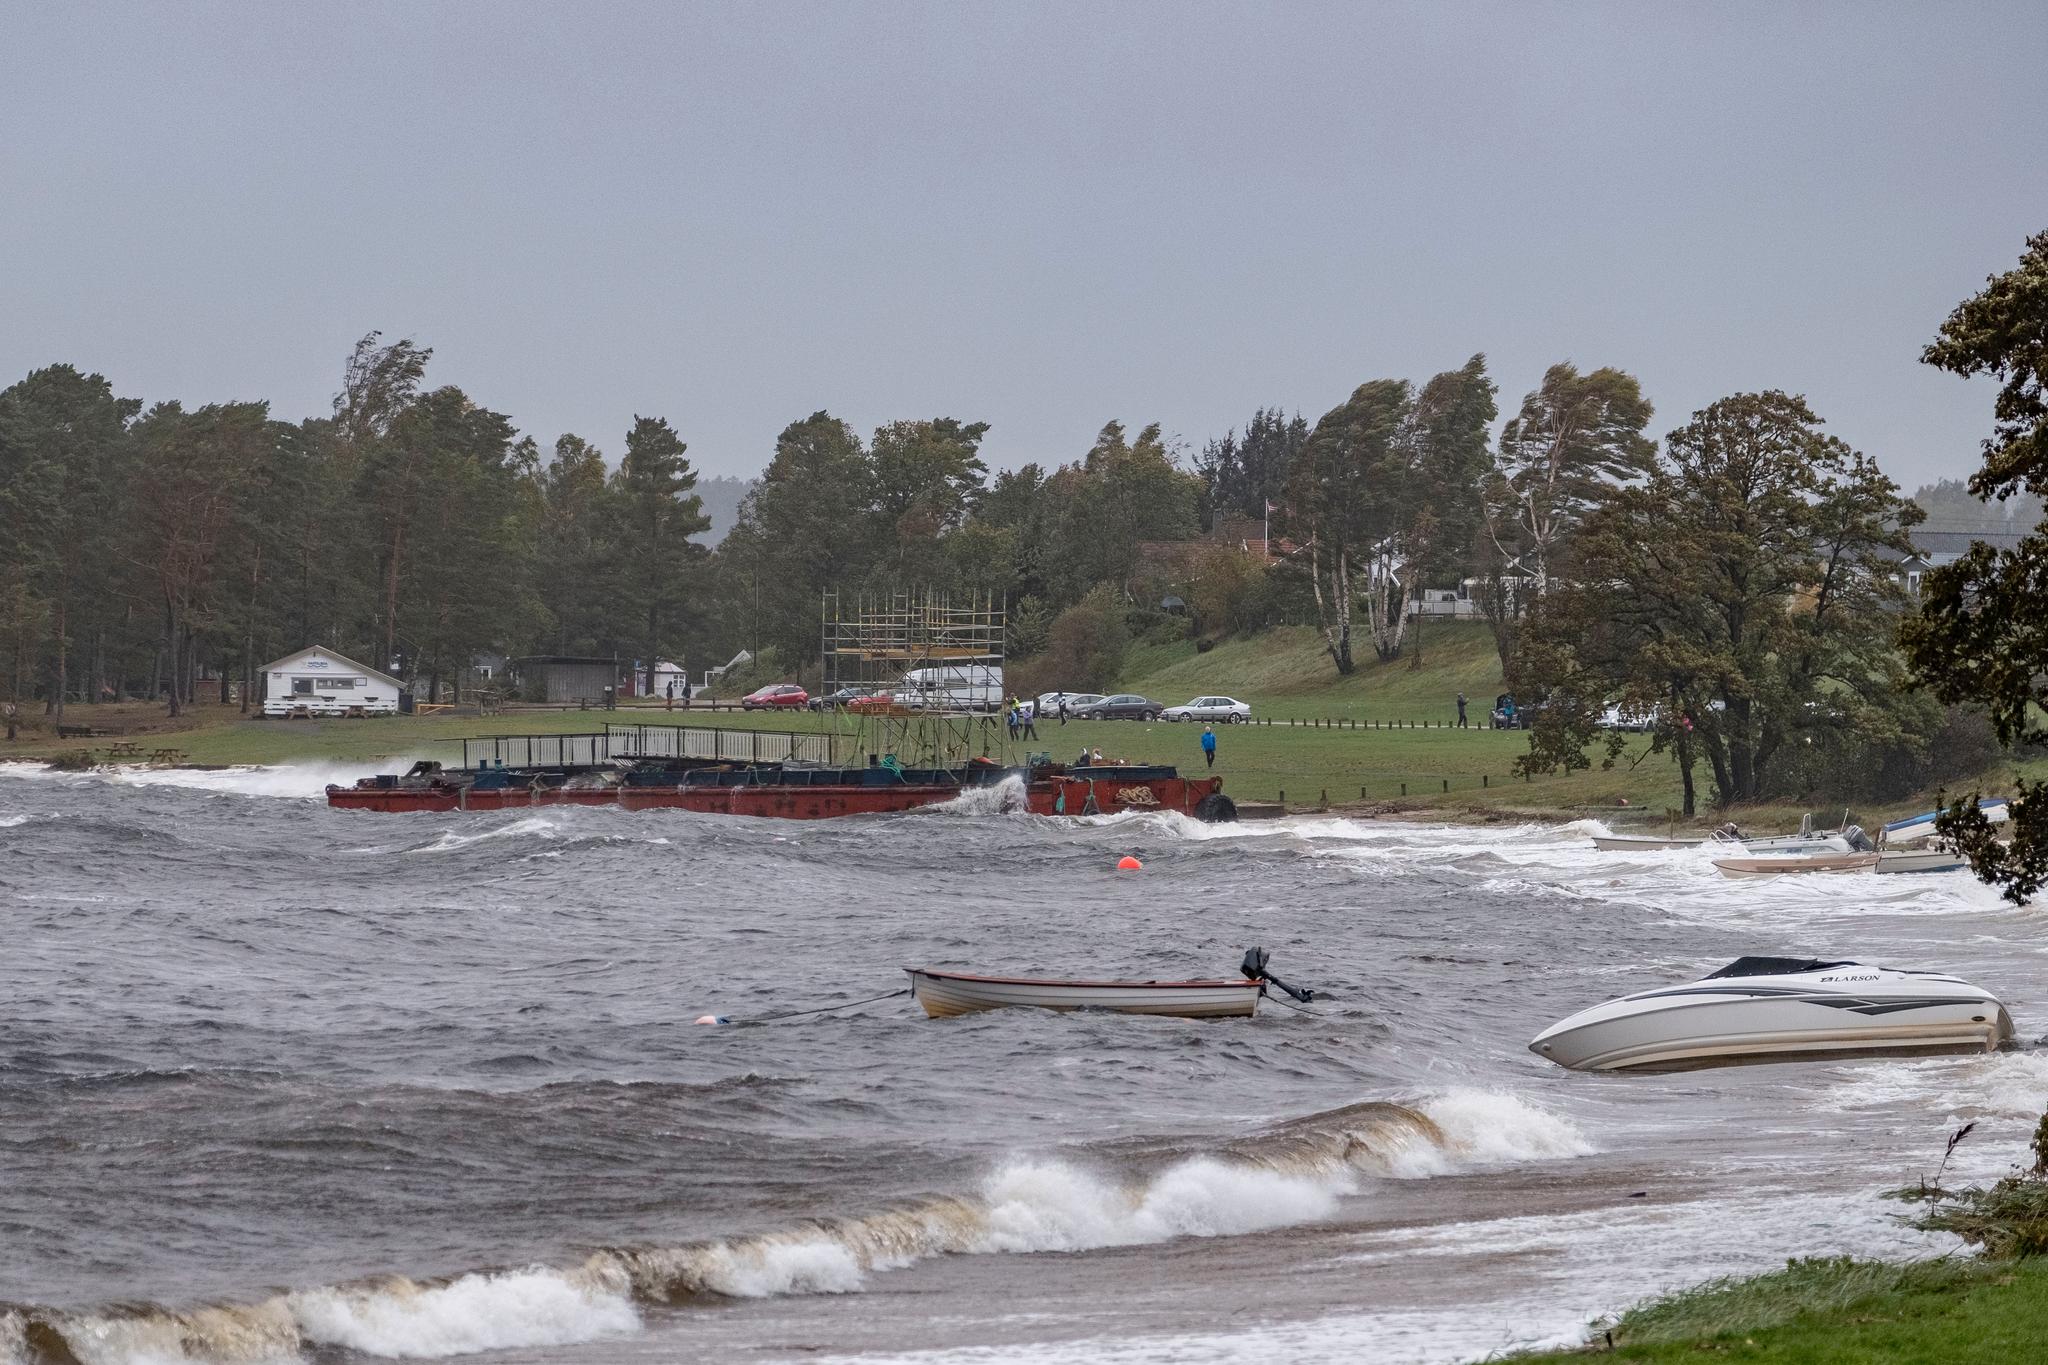 På Hamresanden i Kristiansand slet båter seg løs og havnet på land, og en stor lekter som slet seg fra den nye Varoddbroa som bygges har gått på land.